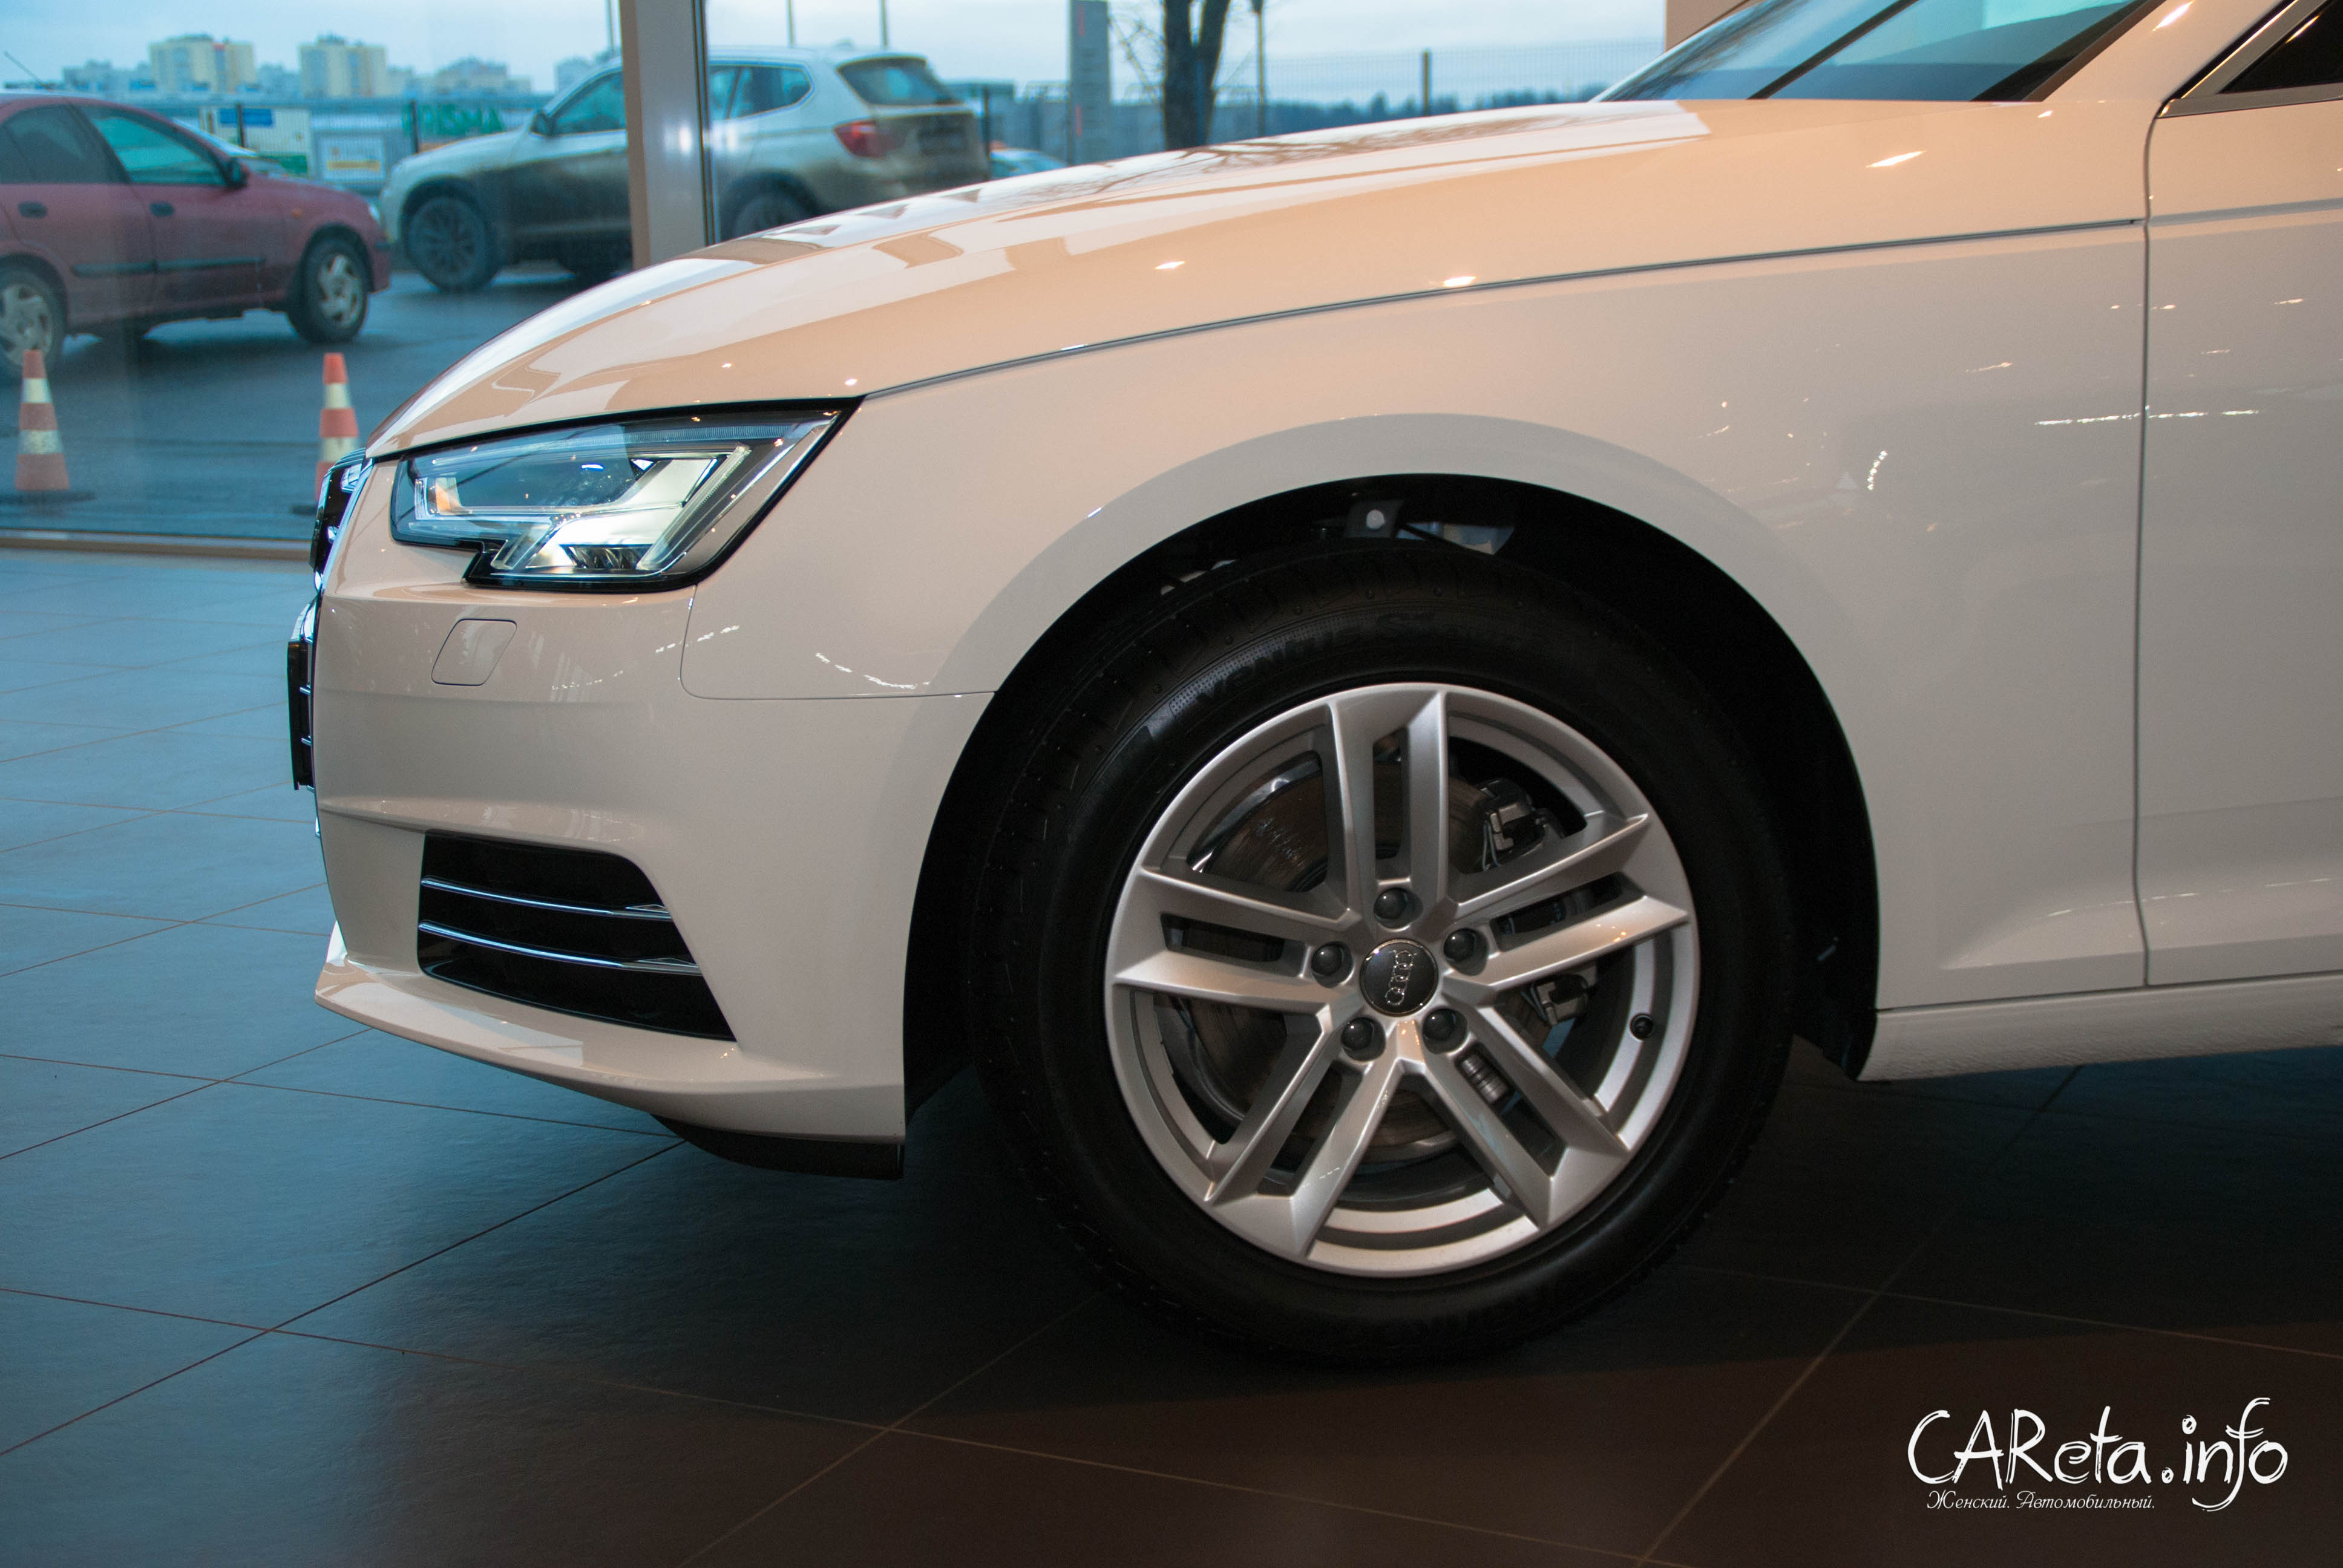 Audi A4 в Ауди Центр Выборгский: прикоснуться к будущему